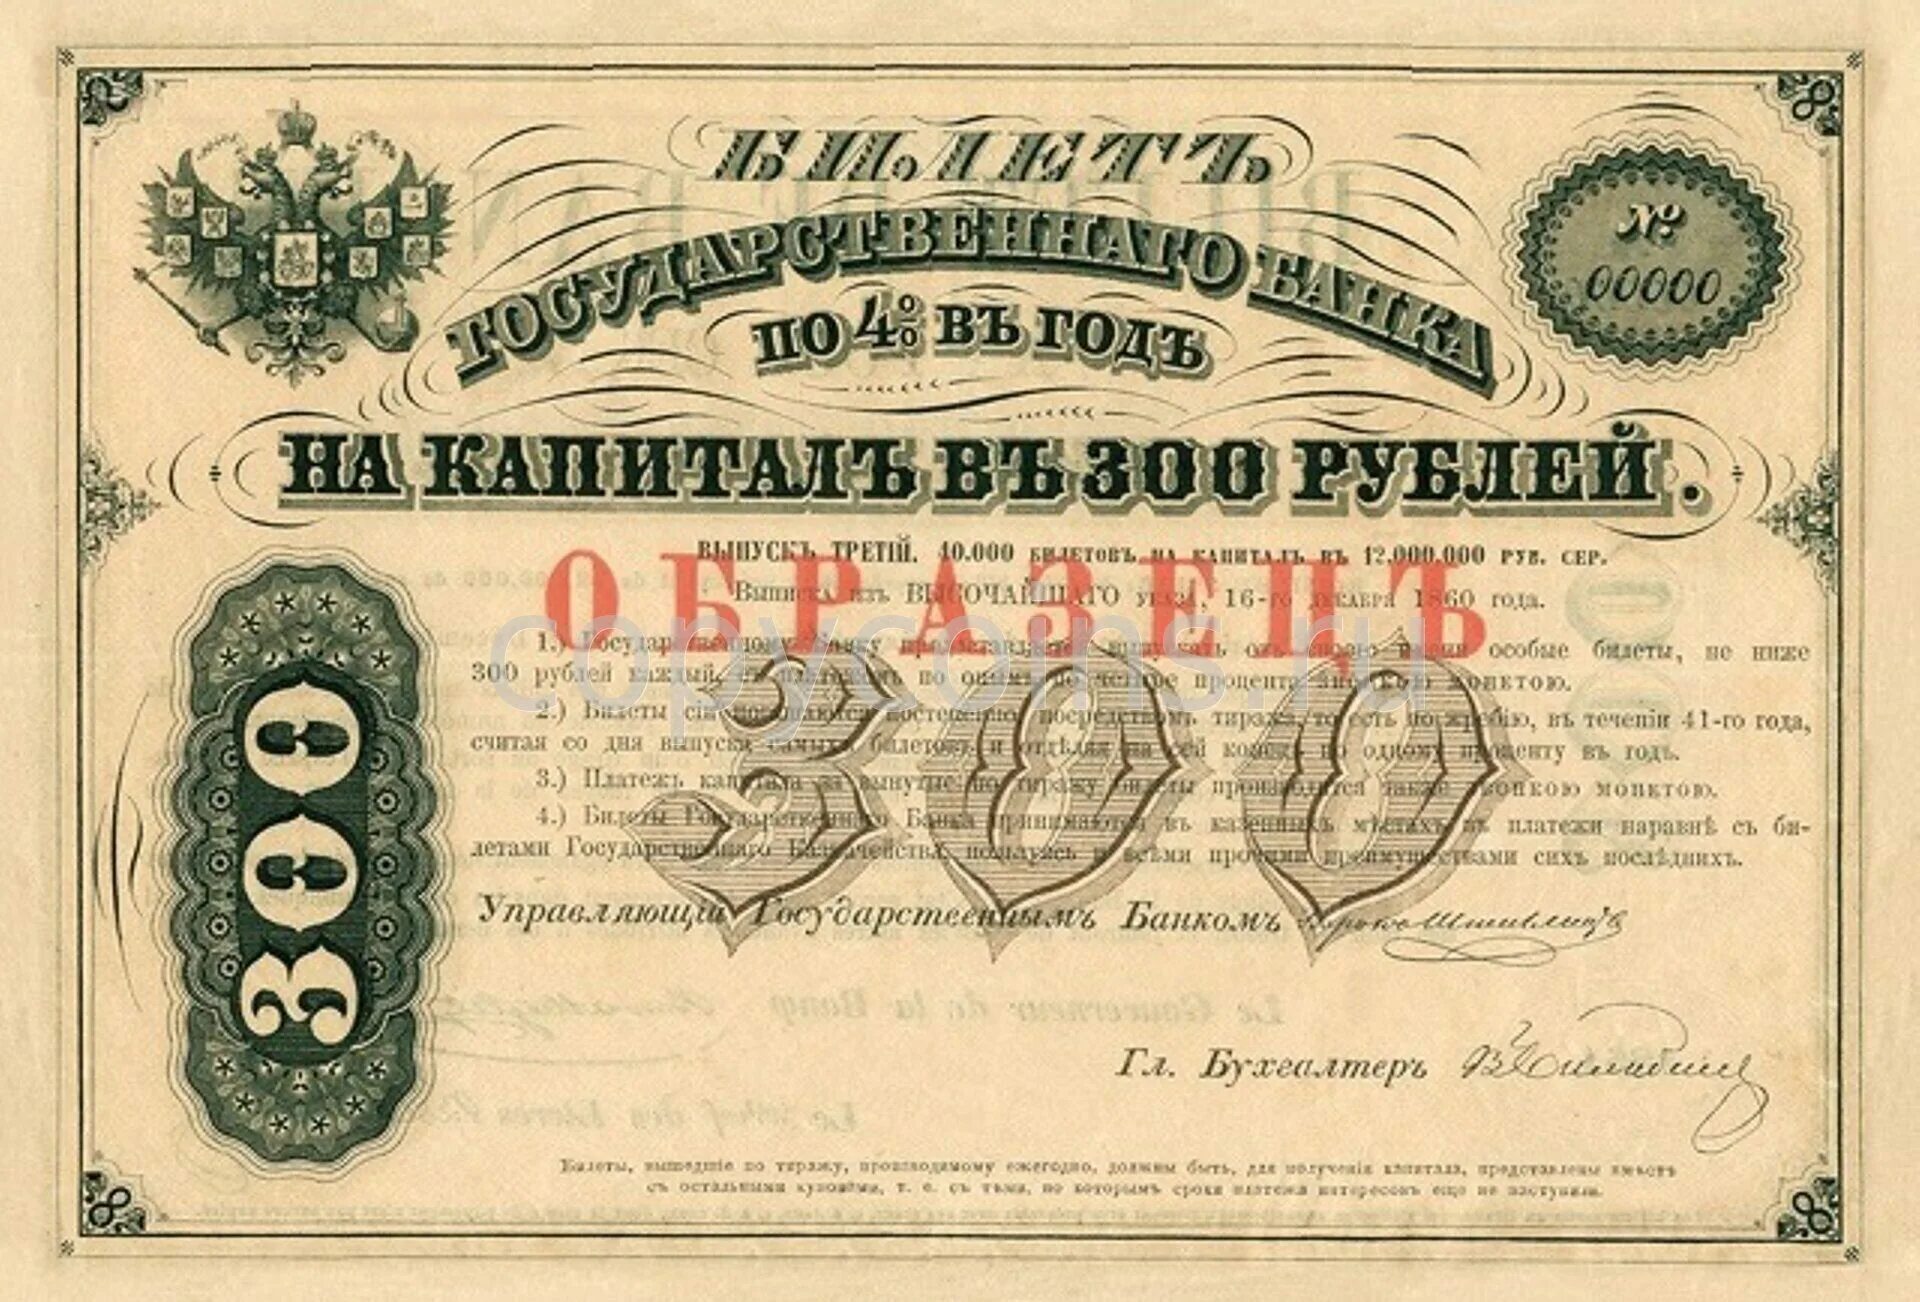 300 рублей билет. Билет государственного банка. Банк Российской империи. Государственный банк Российской империи. Ценные бумаги 1861.